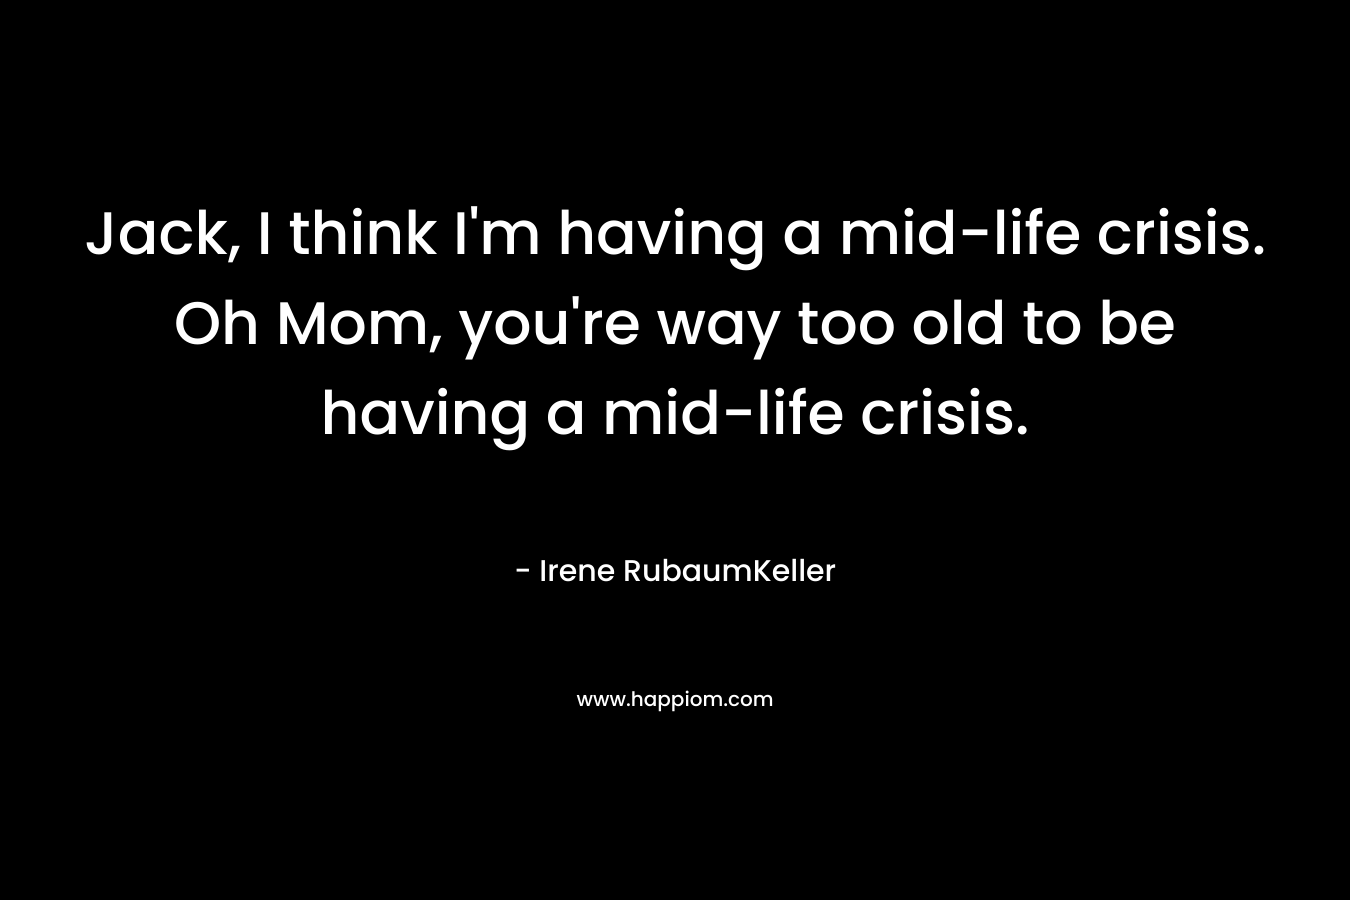 Jack, I think I’m having a mid-life crisis. Oh Mom, you’re way too old to be having a mid-life crisis. – Irene RubaumKeller